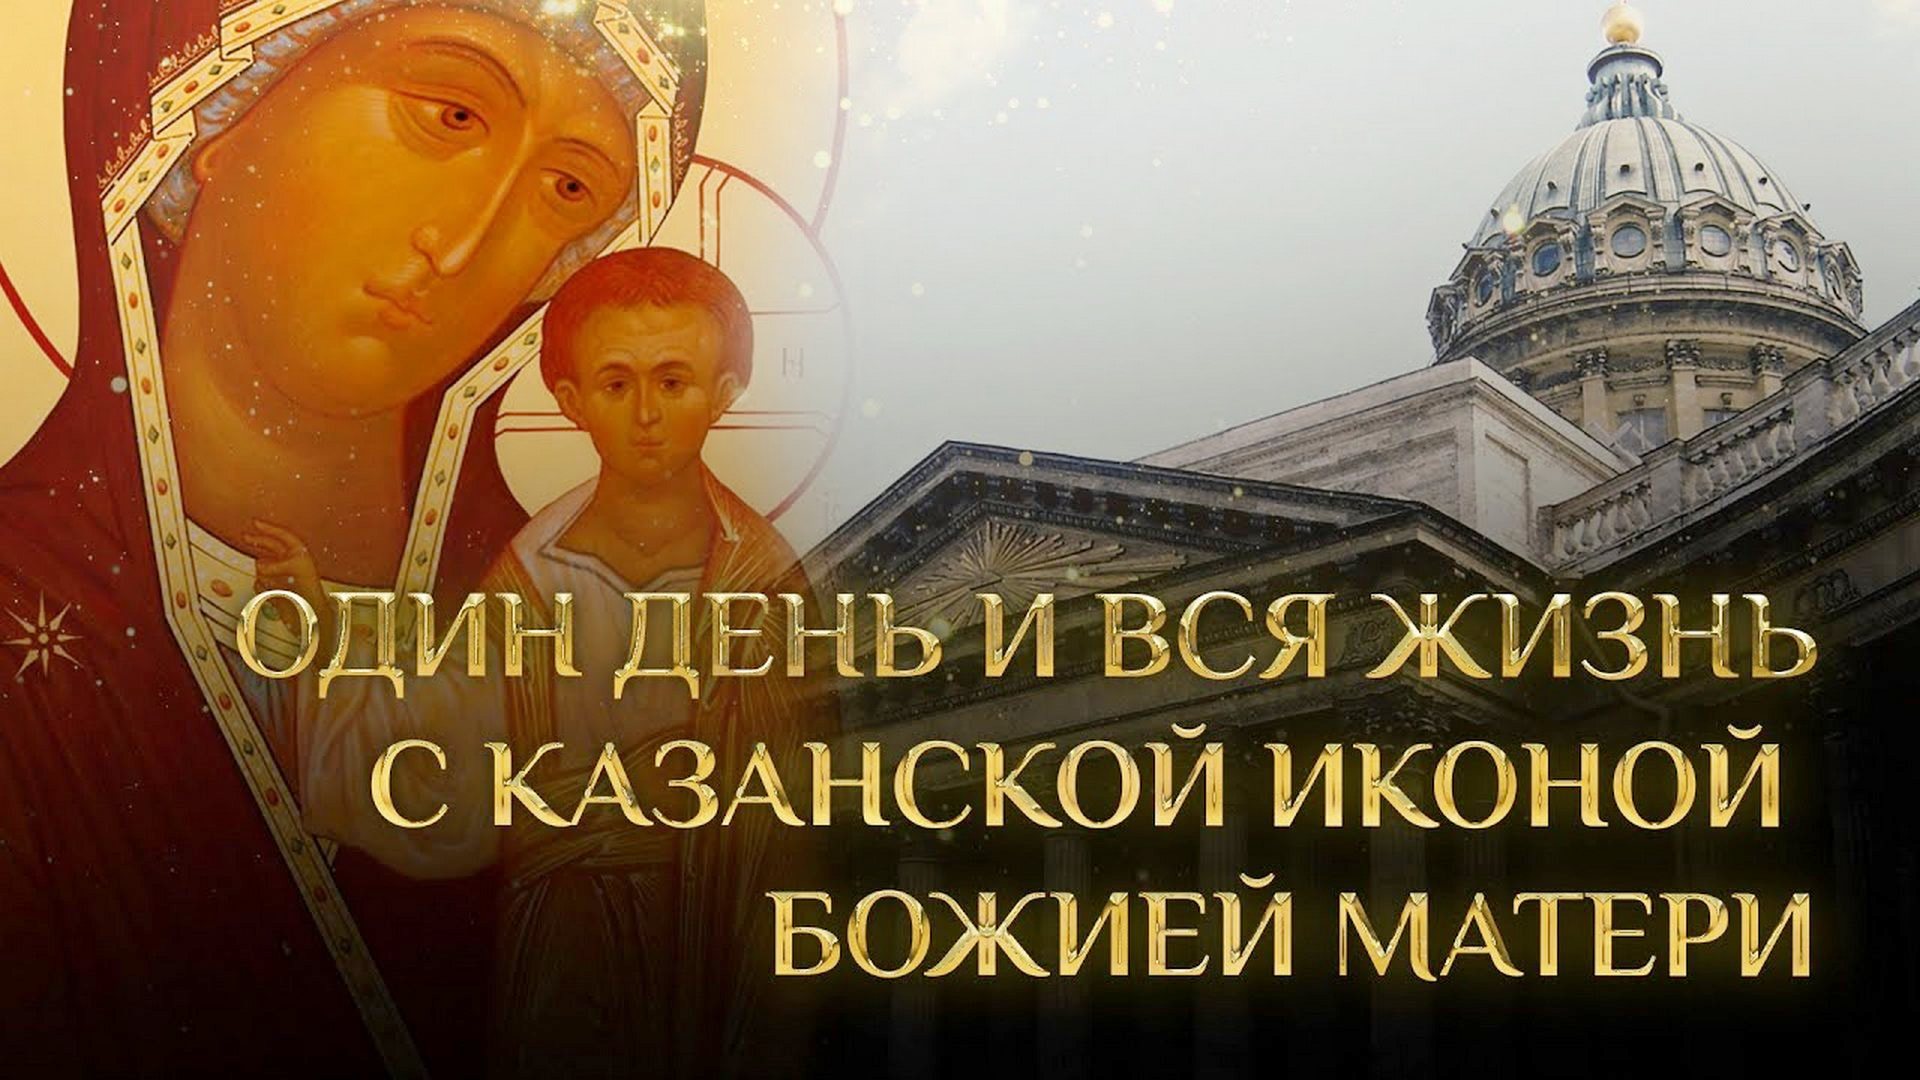 Один день и всю жизнь с Казанской иконой Божией Матери